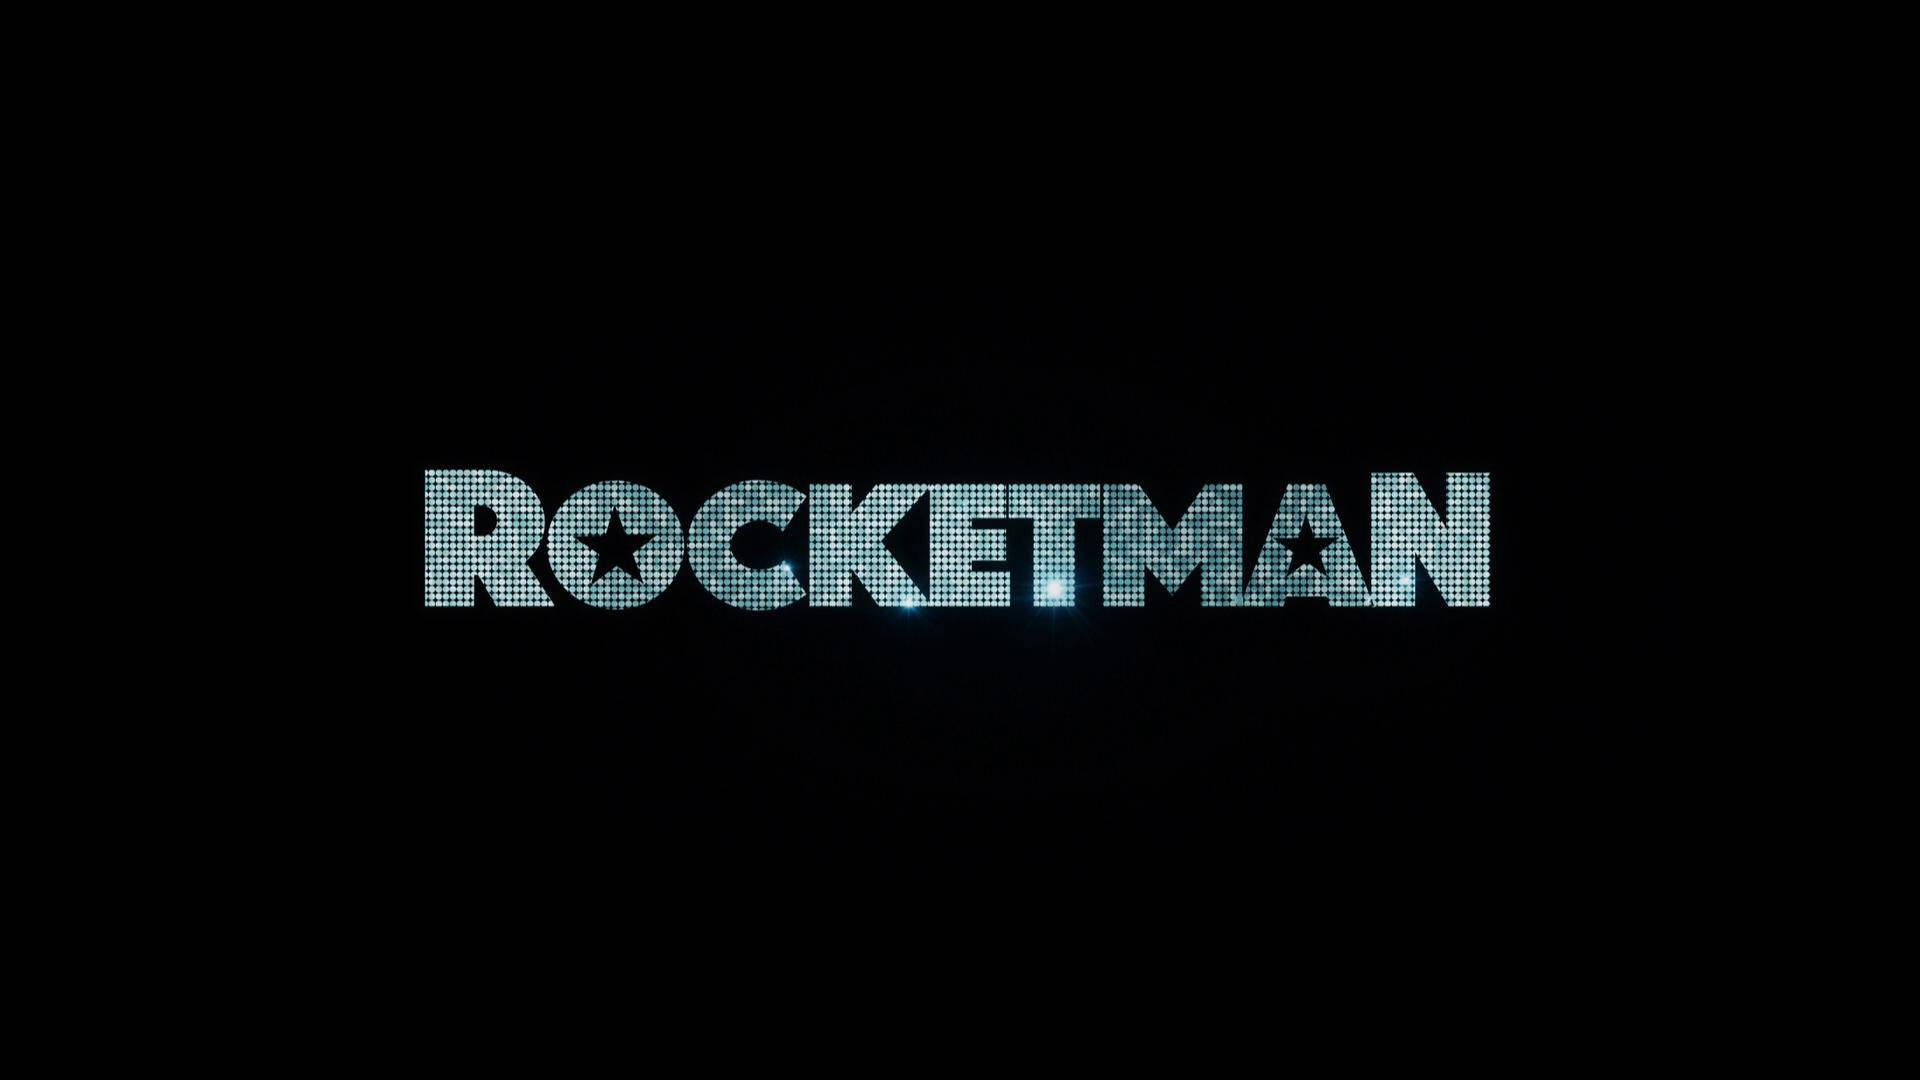 Rocketman Blue Text Background